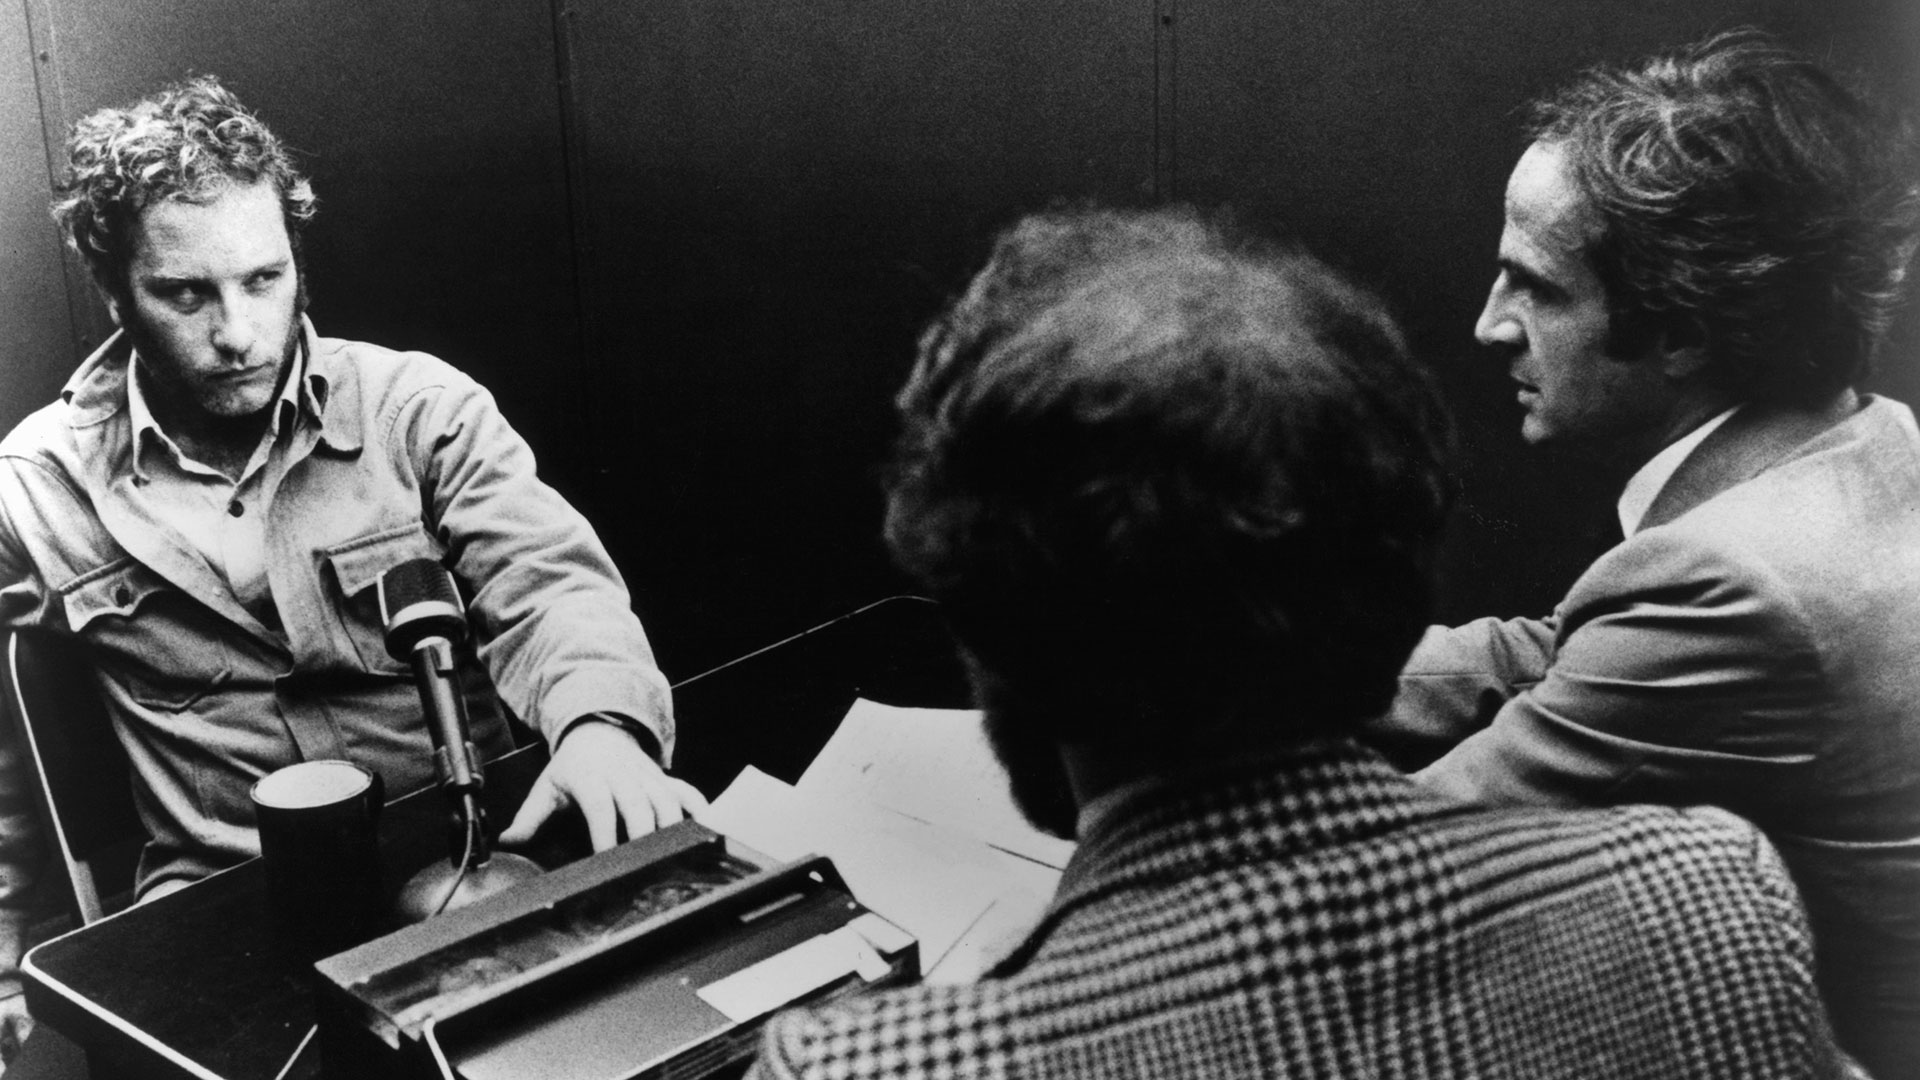 Richard Dreyfuss obtuvo el papel gracias a su insistencia y al rechazo de todas las grandes figuras masculinas de la época. Ninguna quería protagonizar una película de ciencia ficción (Photo by Columbia Pictures/Getty Images)